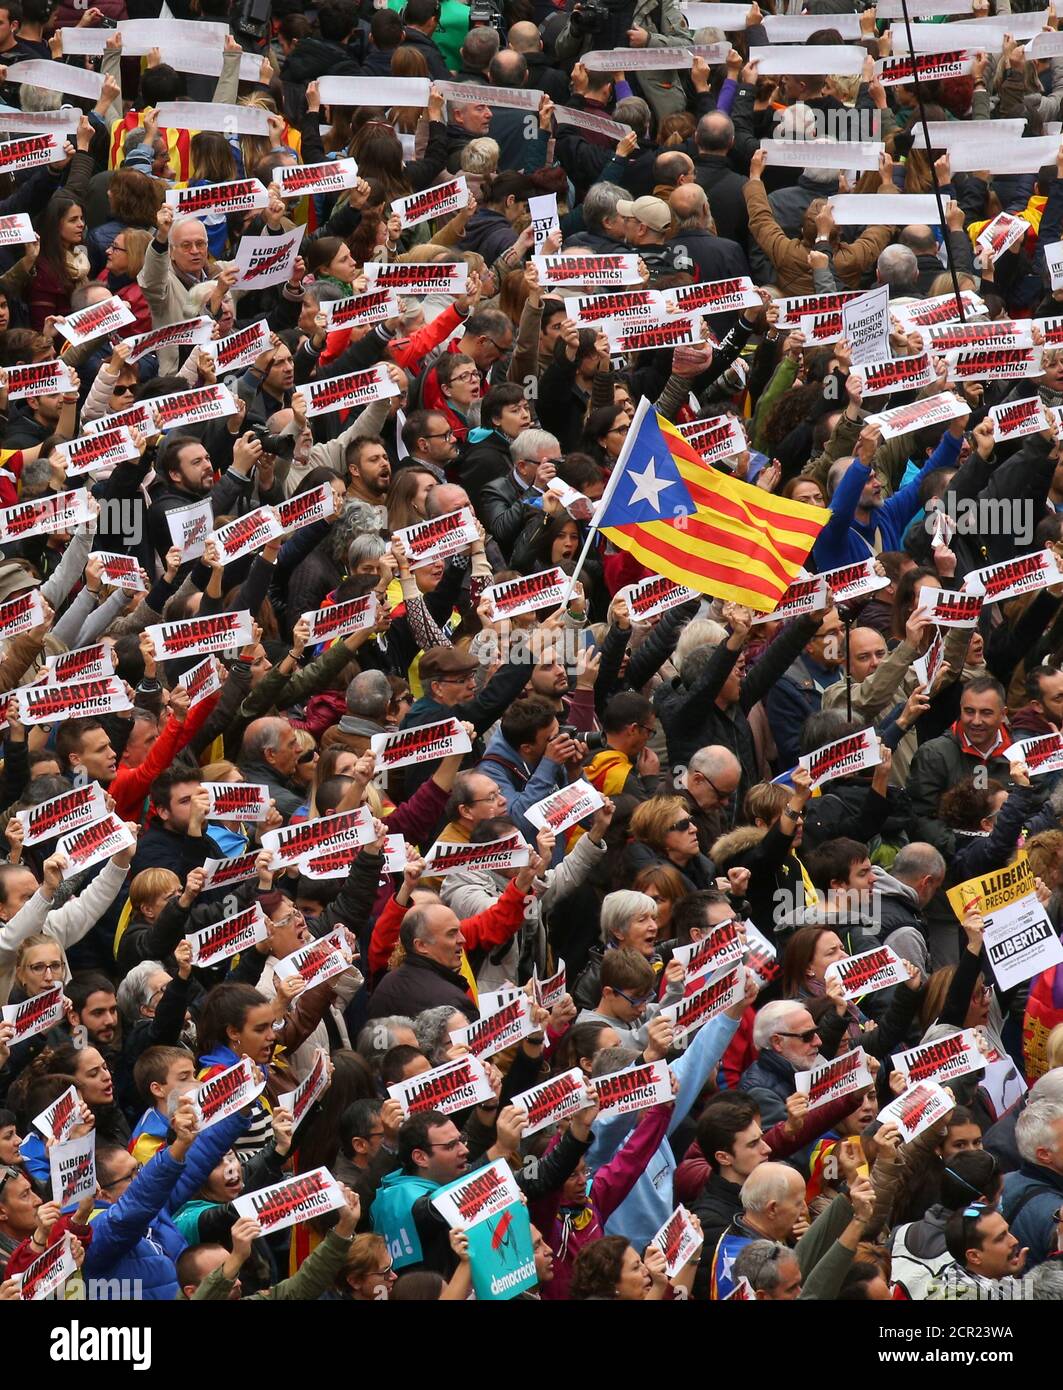 Los manifestantes sostienen pancartas que leen "Libertad presos Políticos, somos República" mientras se reúnen en la plaza Sant Jaume en una manifestación durante una huelga regional parcial en Barcelona, España, el 8 de noviembre de 2017. REUTERS/Albert Gea Foto de stock